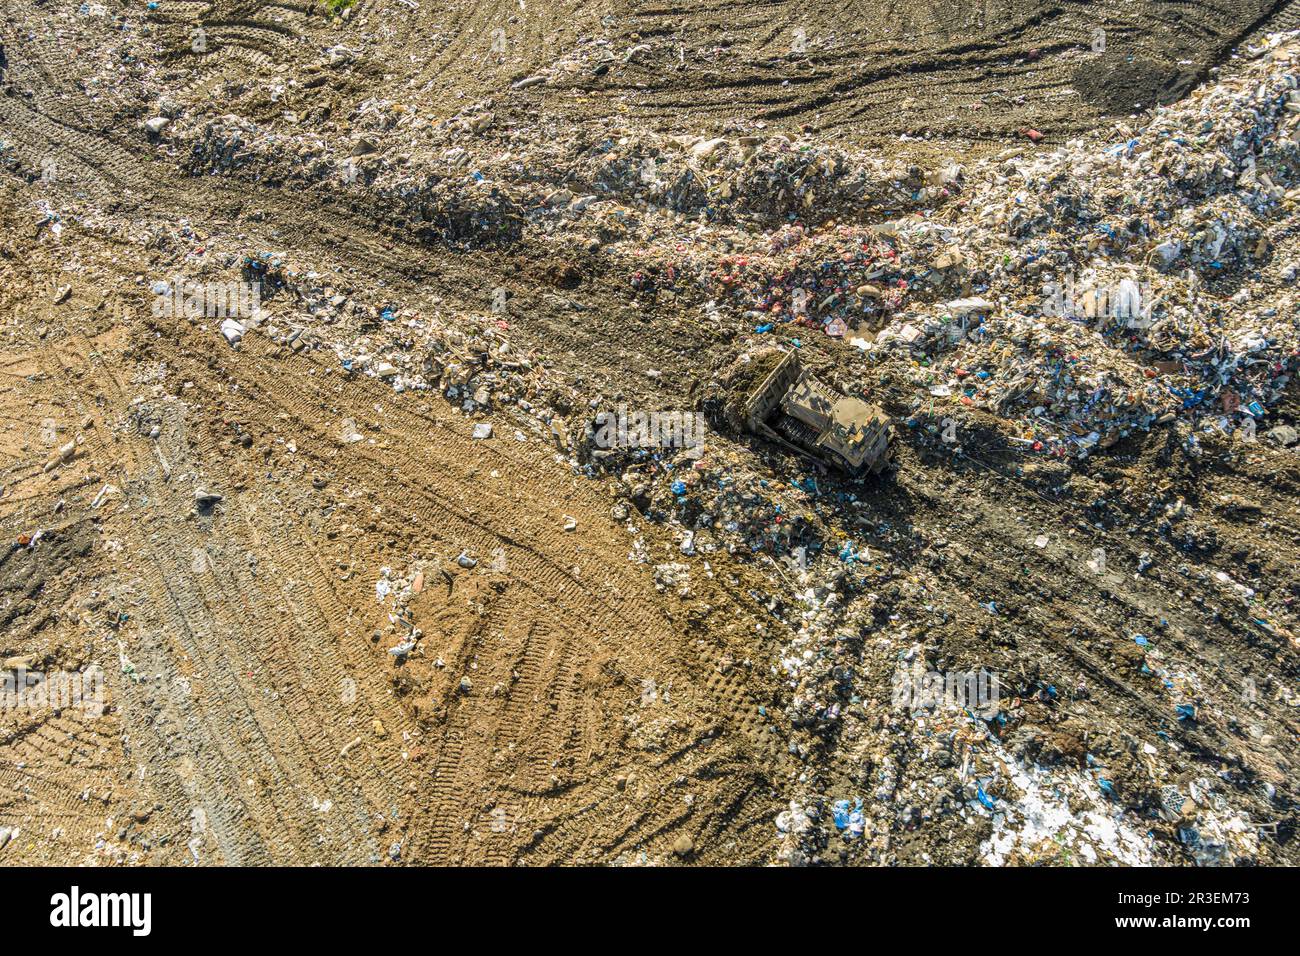 Vista aérea de la instalación de residuos municipales de vertedero de basura, Pensilvania, EE.UU Foto de stock